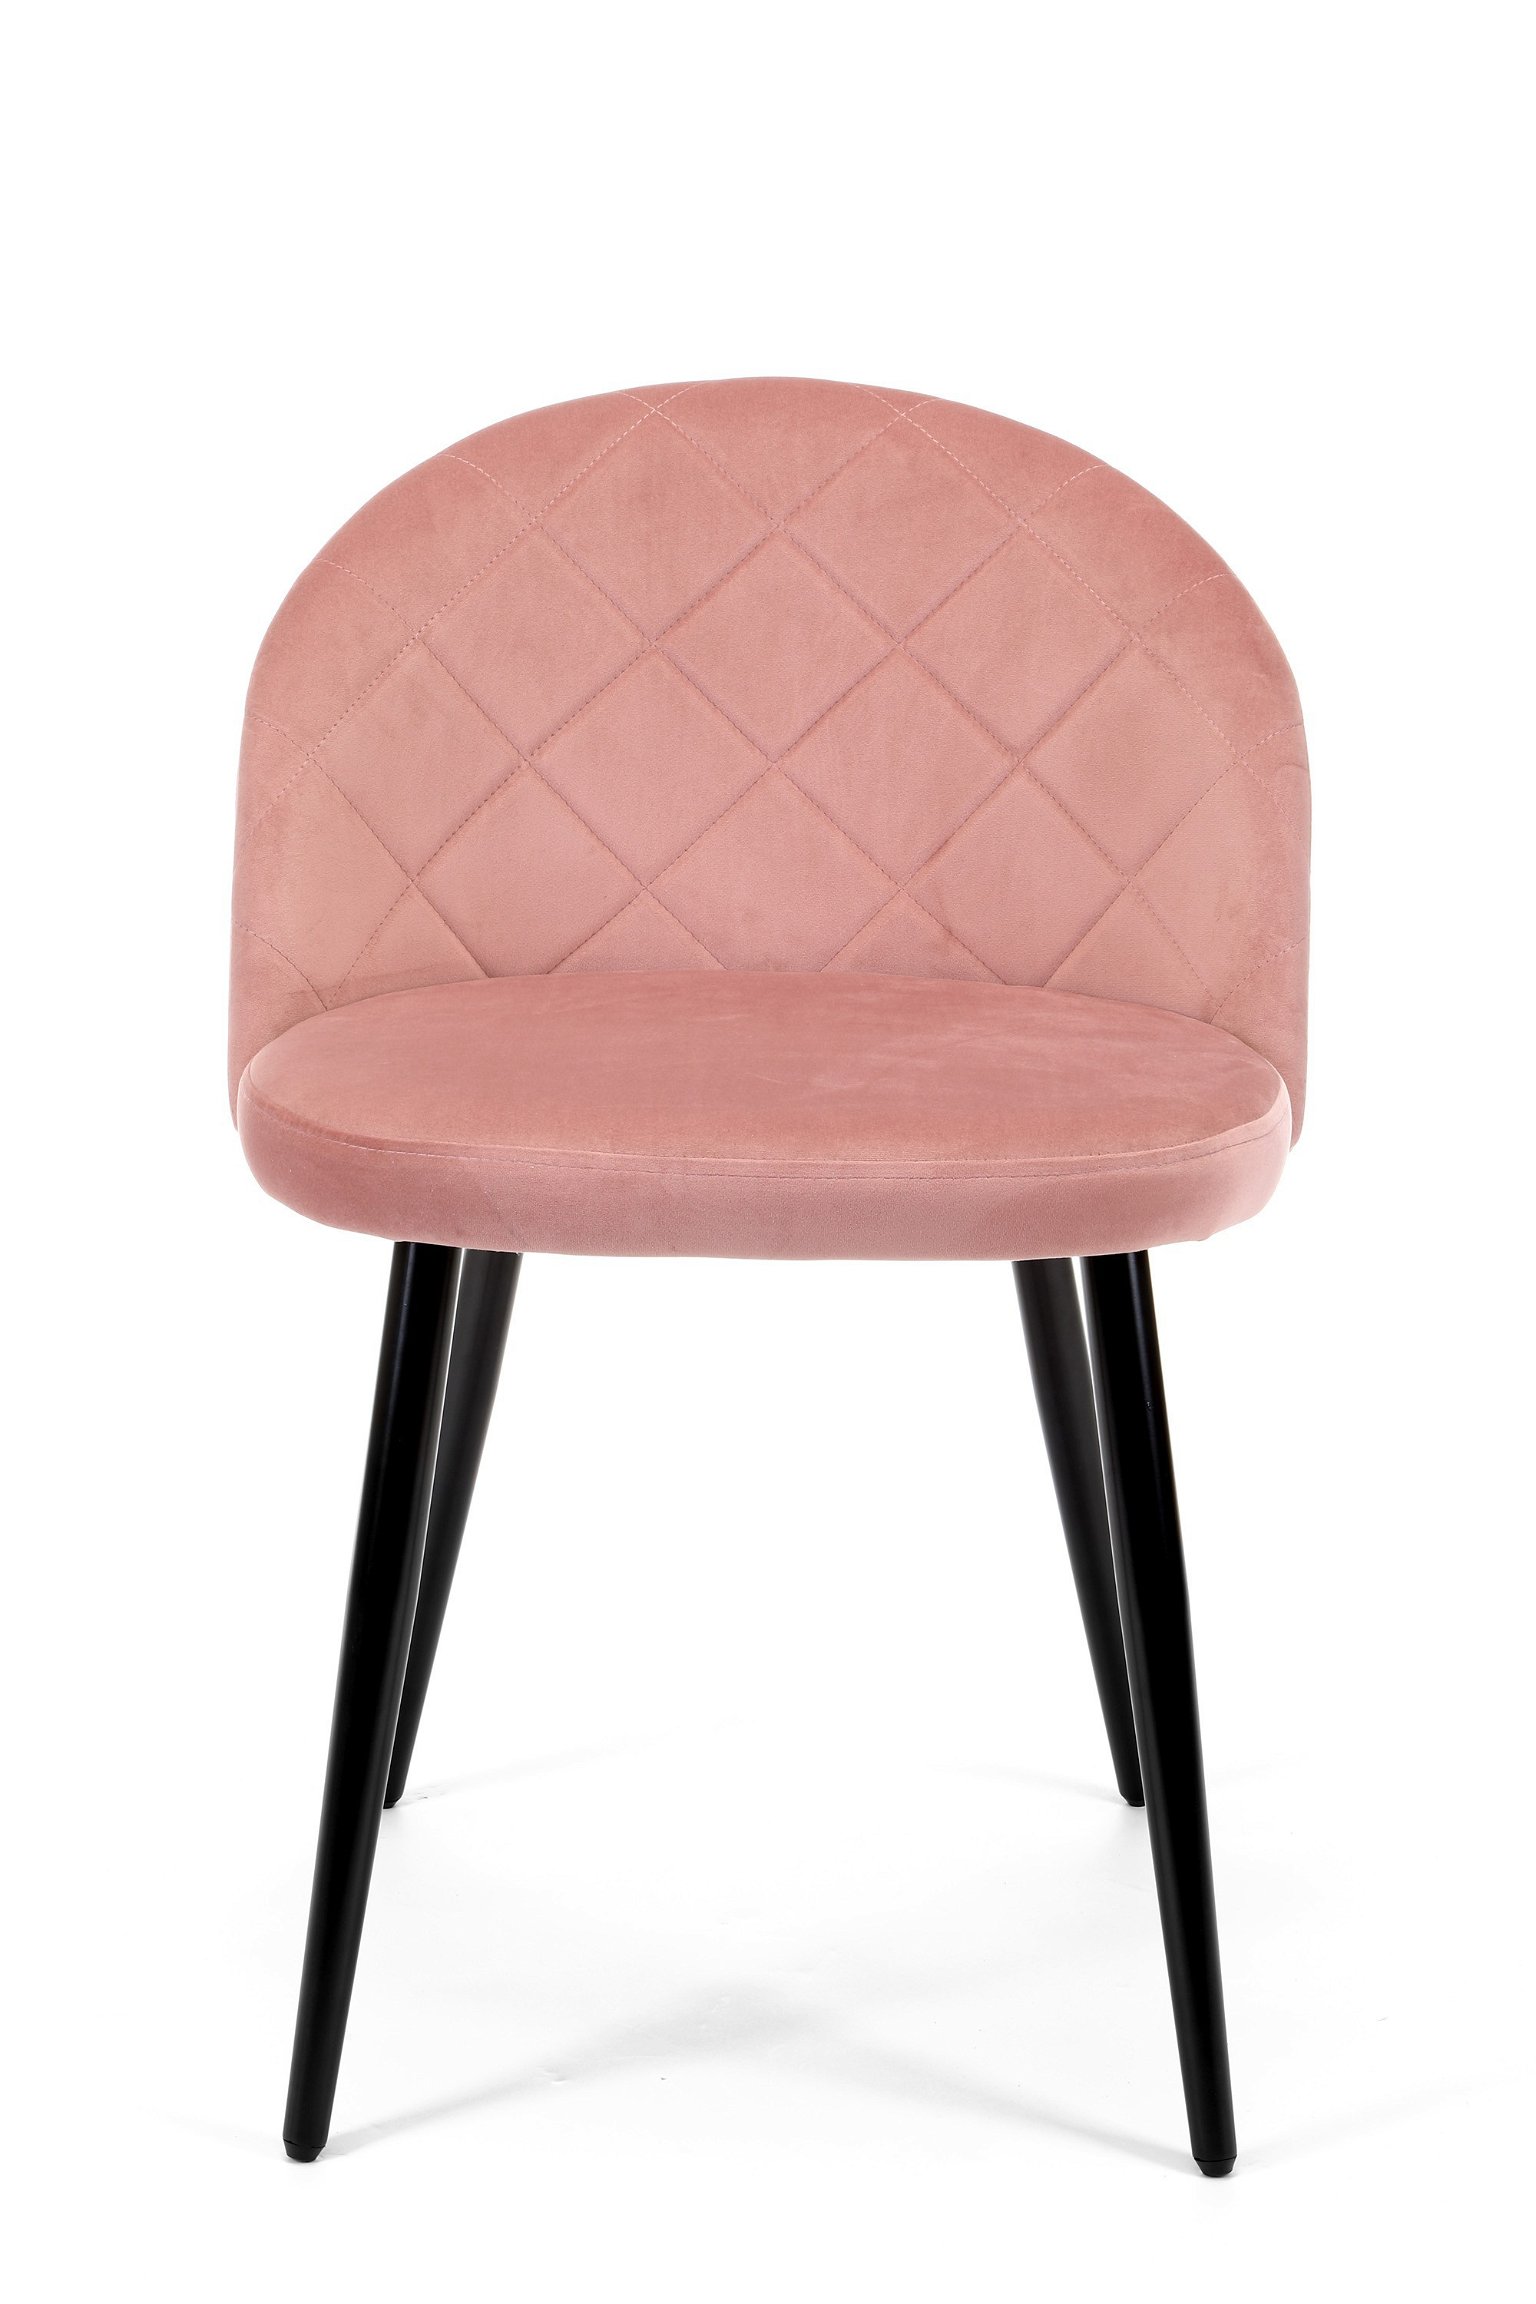 2-ių kėdžių komplektas SJ.077, rožinė - 7